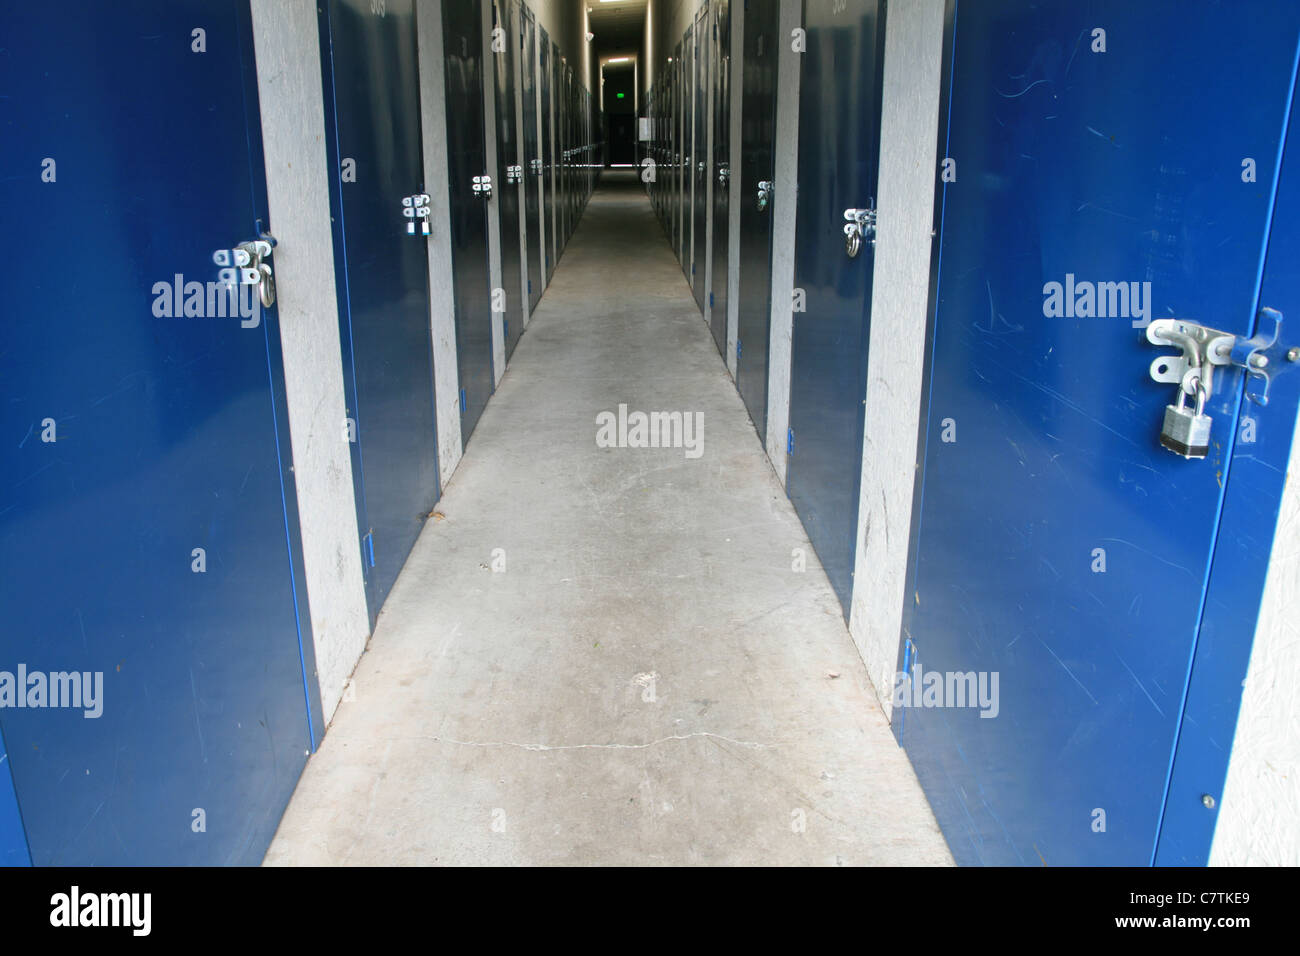 Vue horizontale dans un couloir dans un bâtiment de stockage autonome avec cadenassé portes bleues de chaque côté Banque D'Images